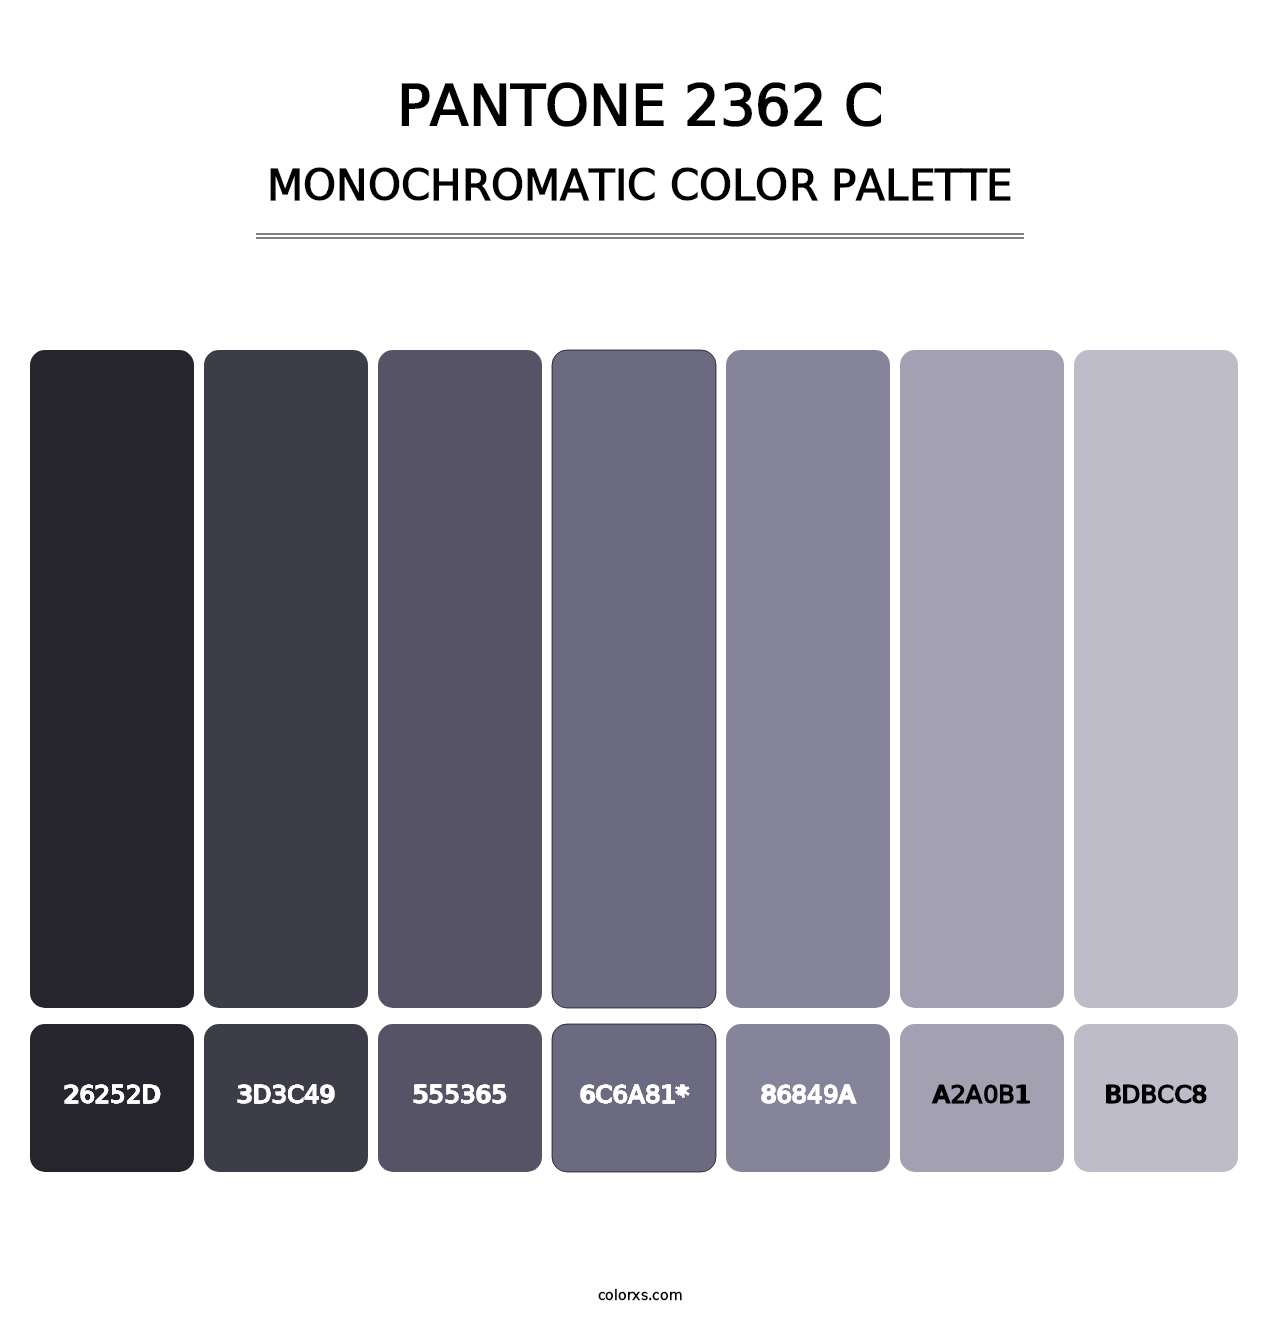 PANTONE 2362 C - Monochromatic Color Palette